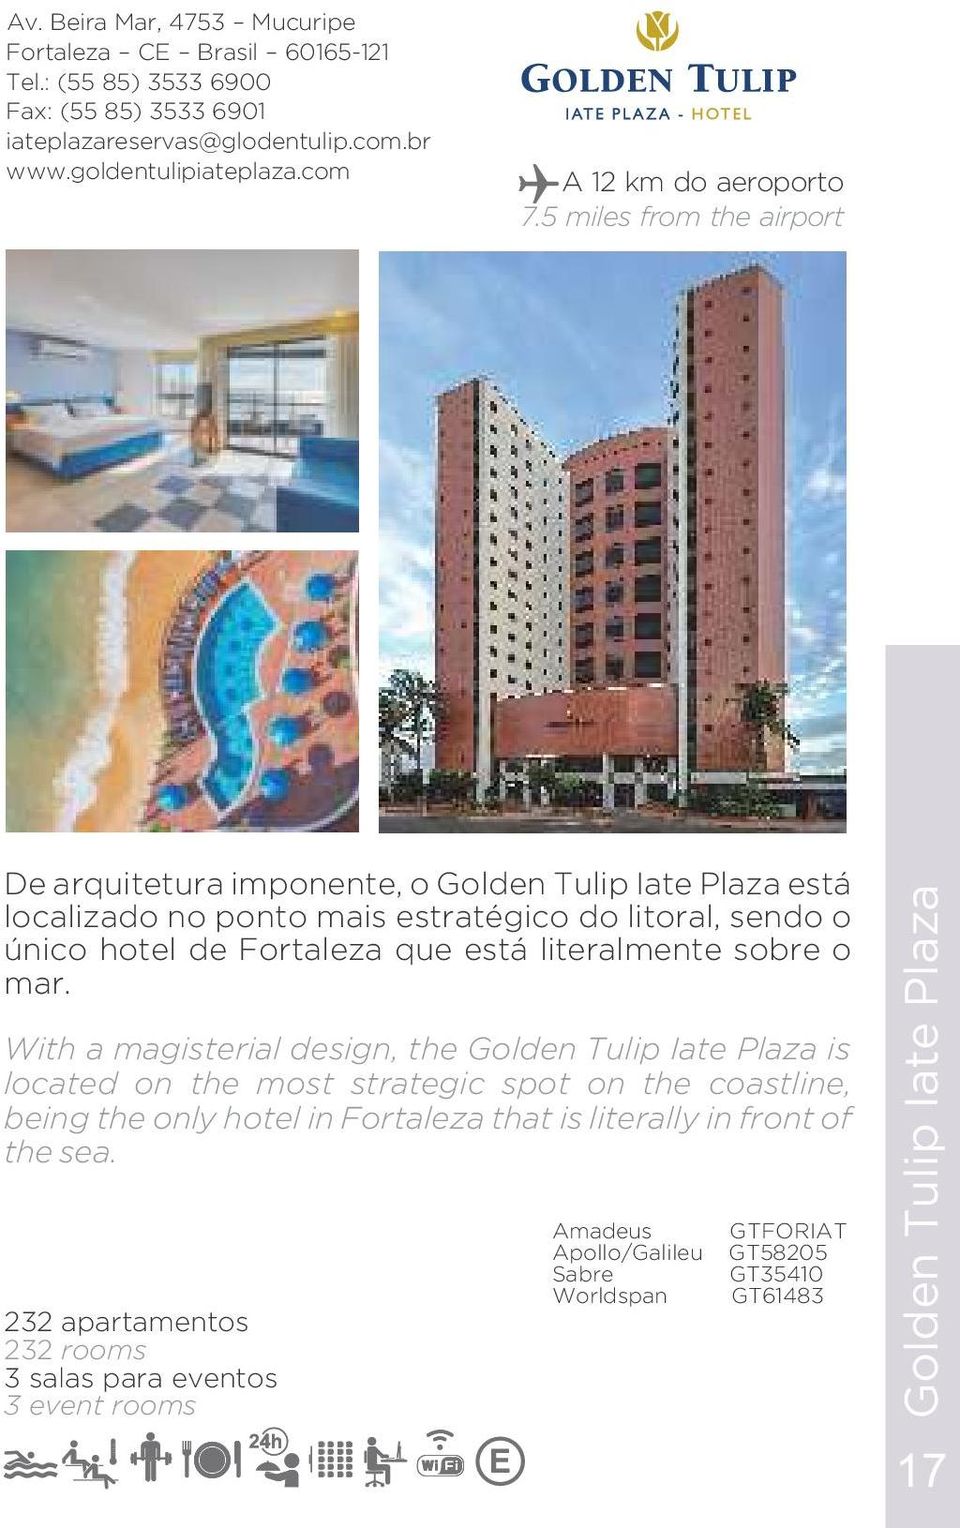 5 miles from the airport De arquitetura imponente, o Golden Tulip Iate Plaza está localizado no ponto mais estratégico do litoral, sendo o único hotel de Fortaleza que está